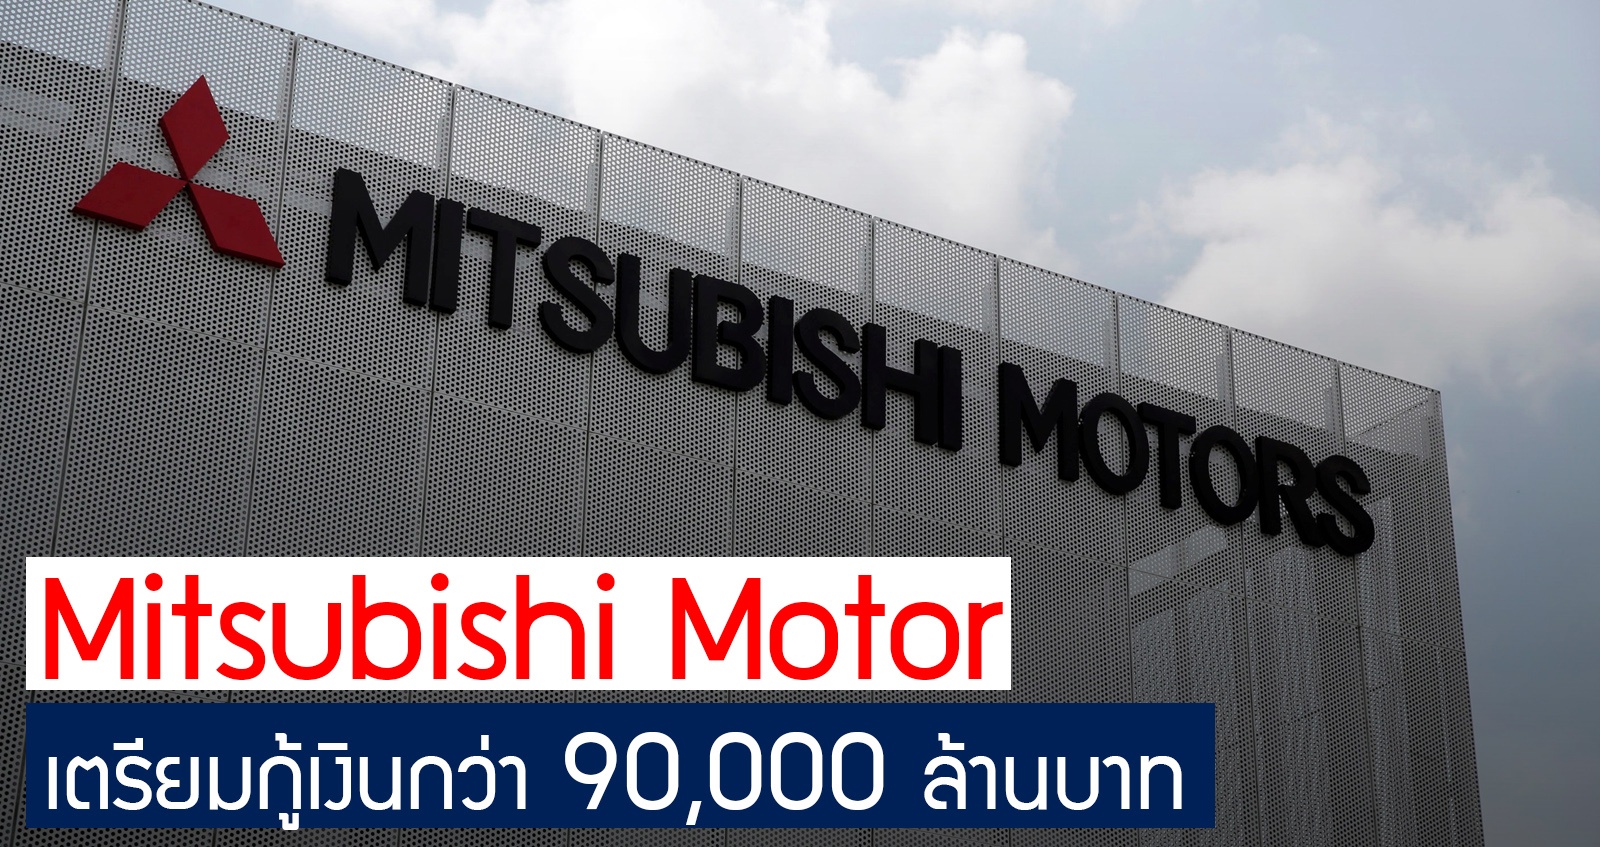 Mitsubishi Motor เตรียมขอกู้เงิน กว่า 90,000 ล้านบาท